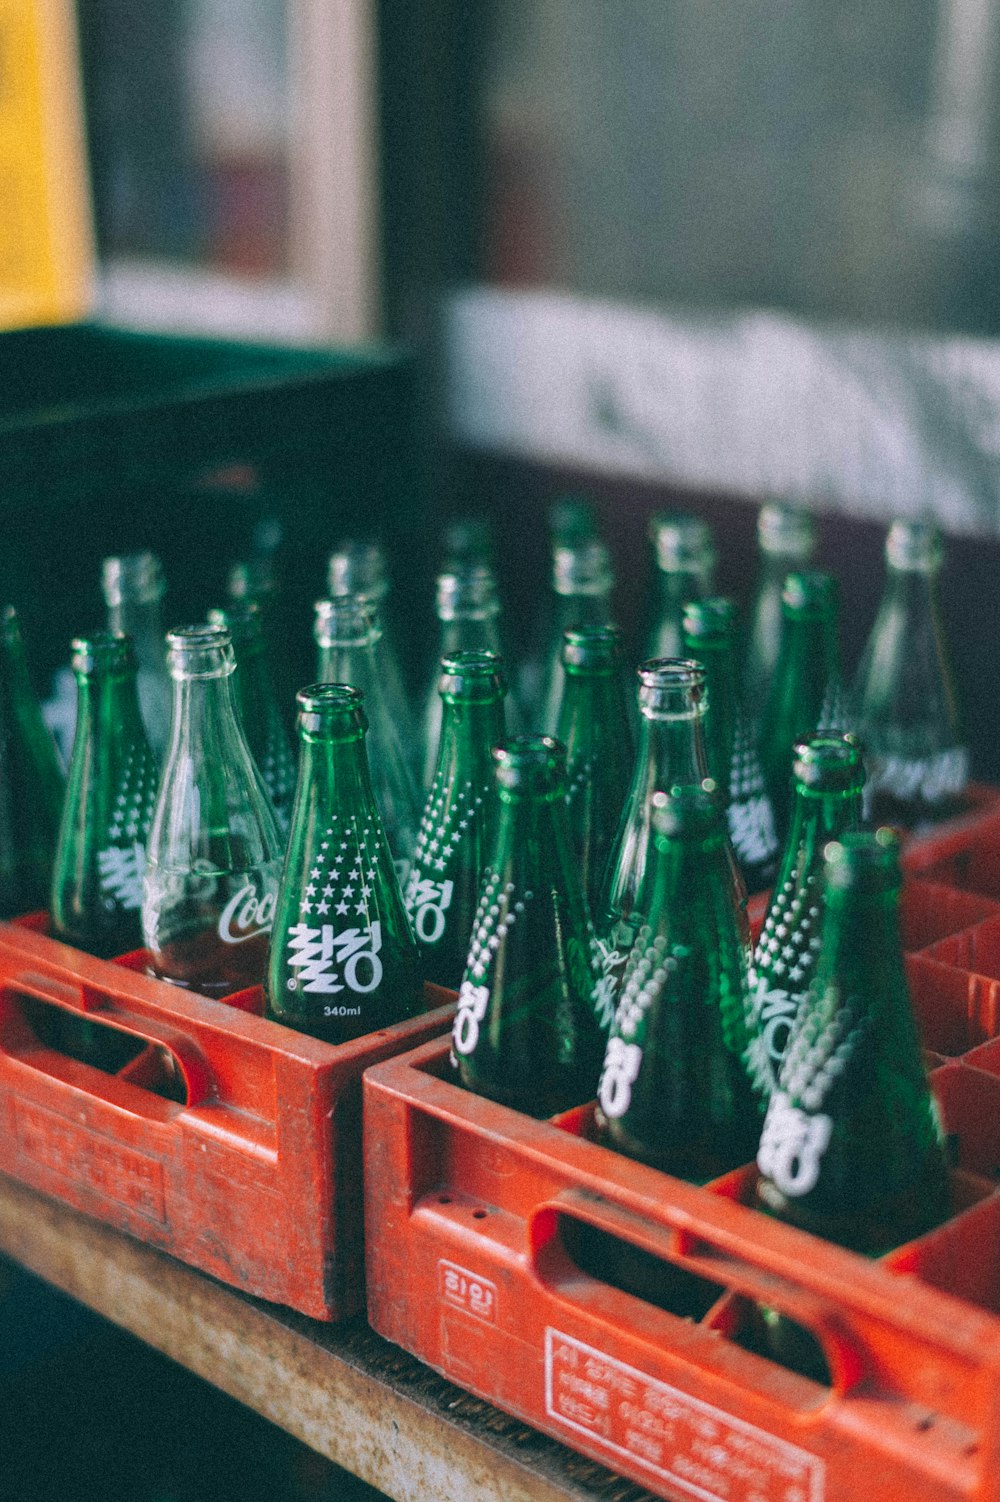 green glass bottles on red wooden shelf